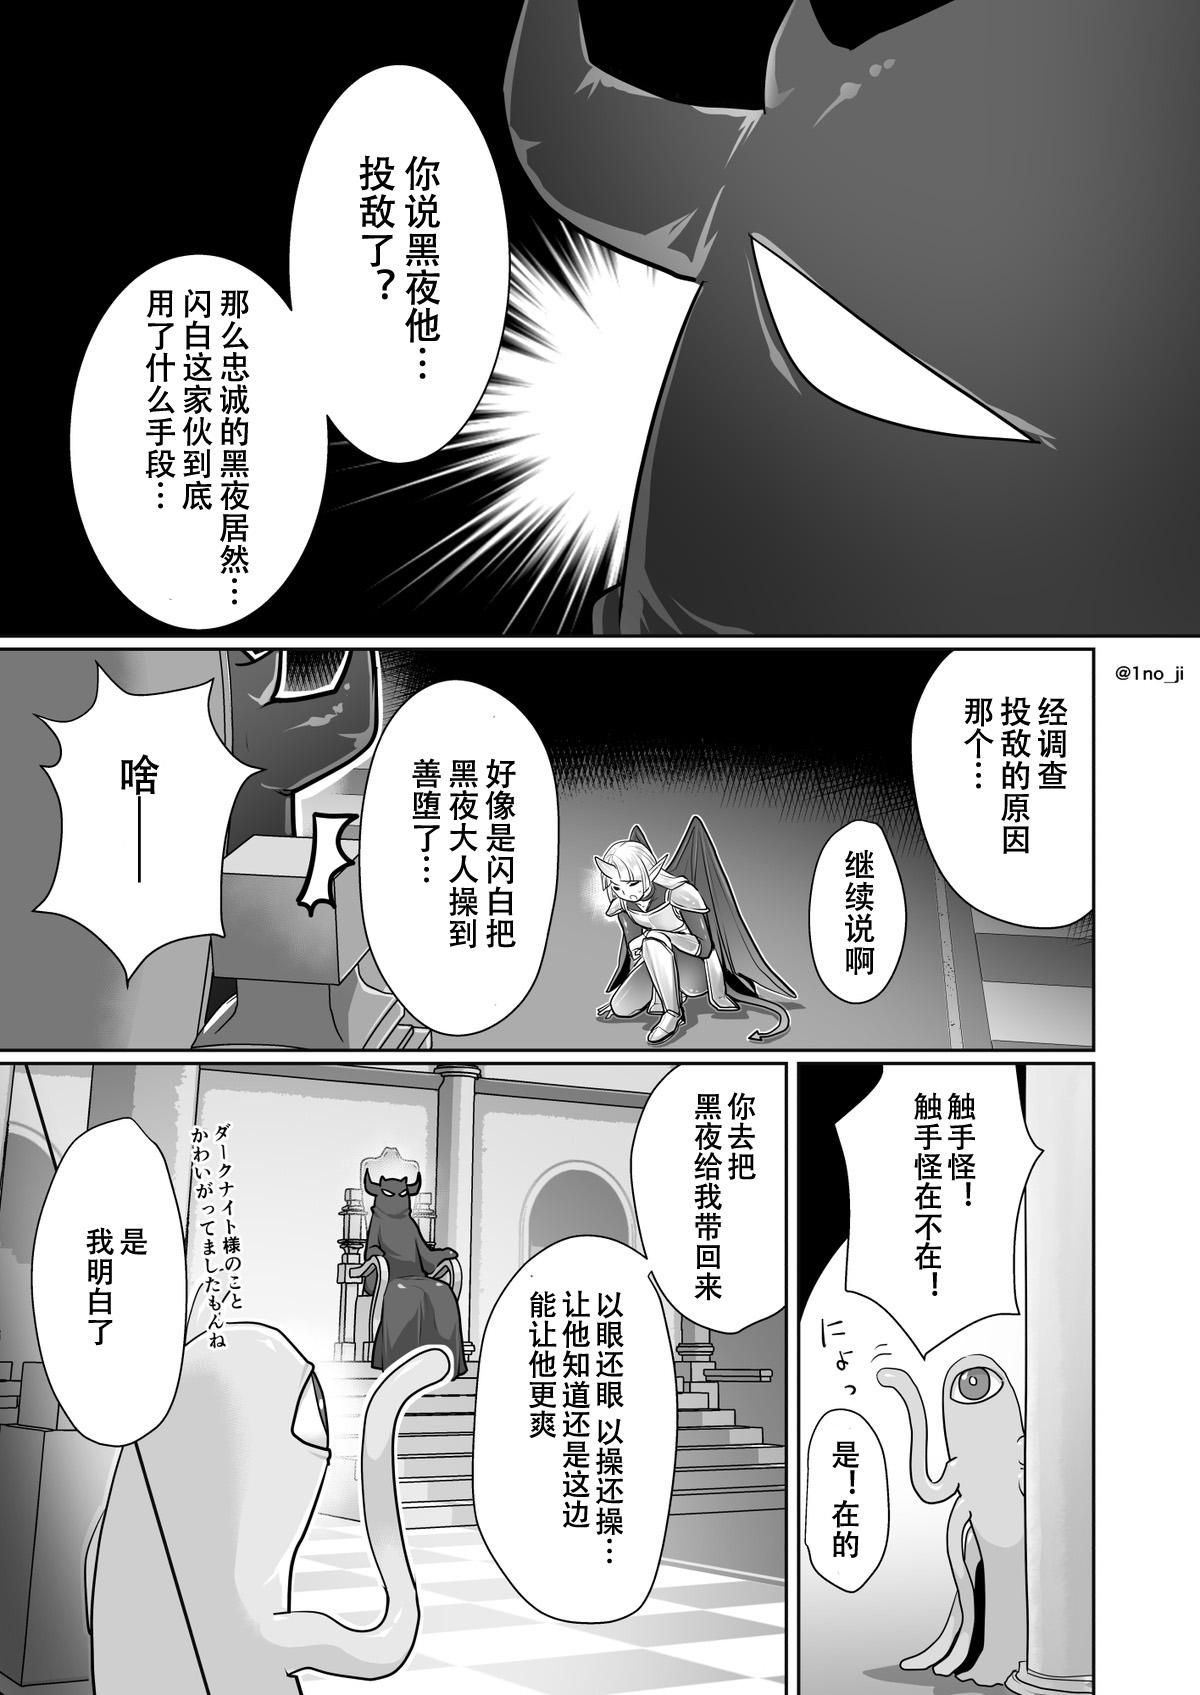 Slutty darknight san series - Original Free Blowjobs - Page 8